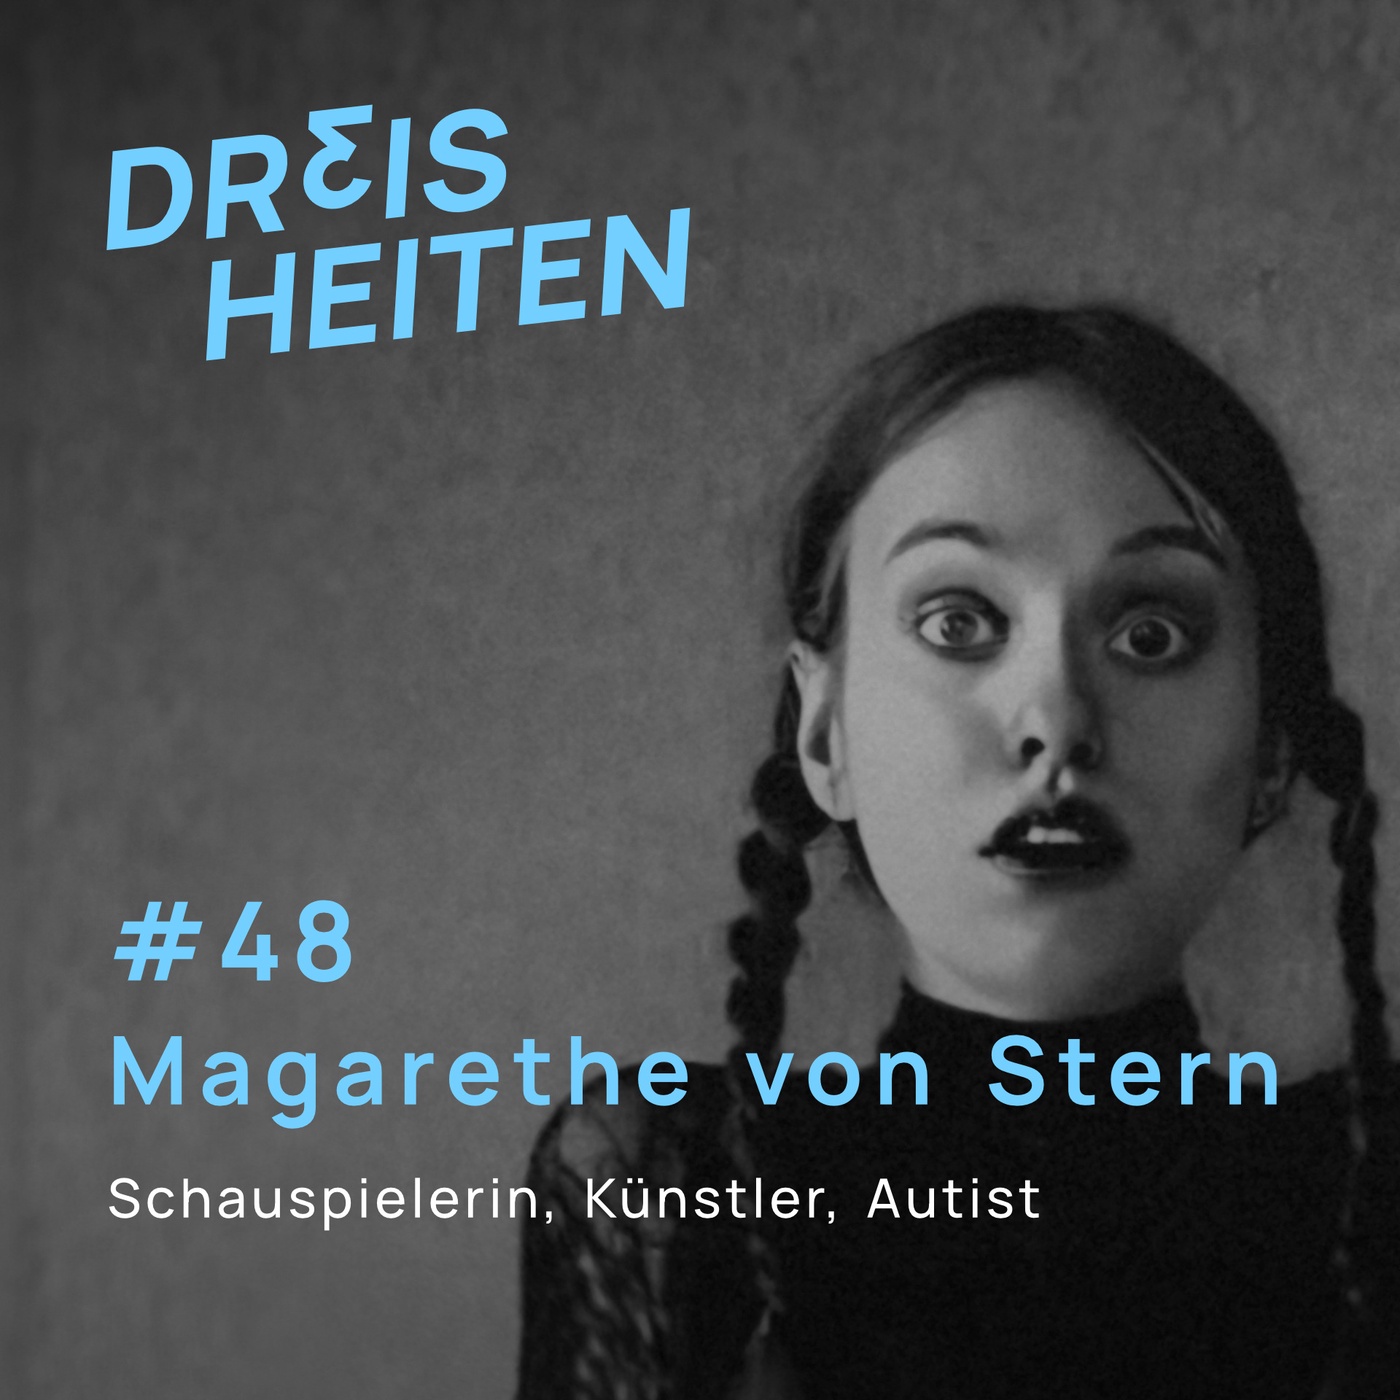 #48 - Magarethe von Stern - Schauspielerin, Künstler, Autist